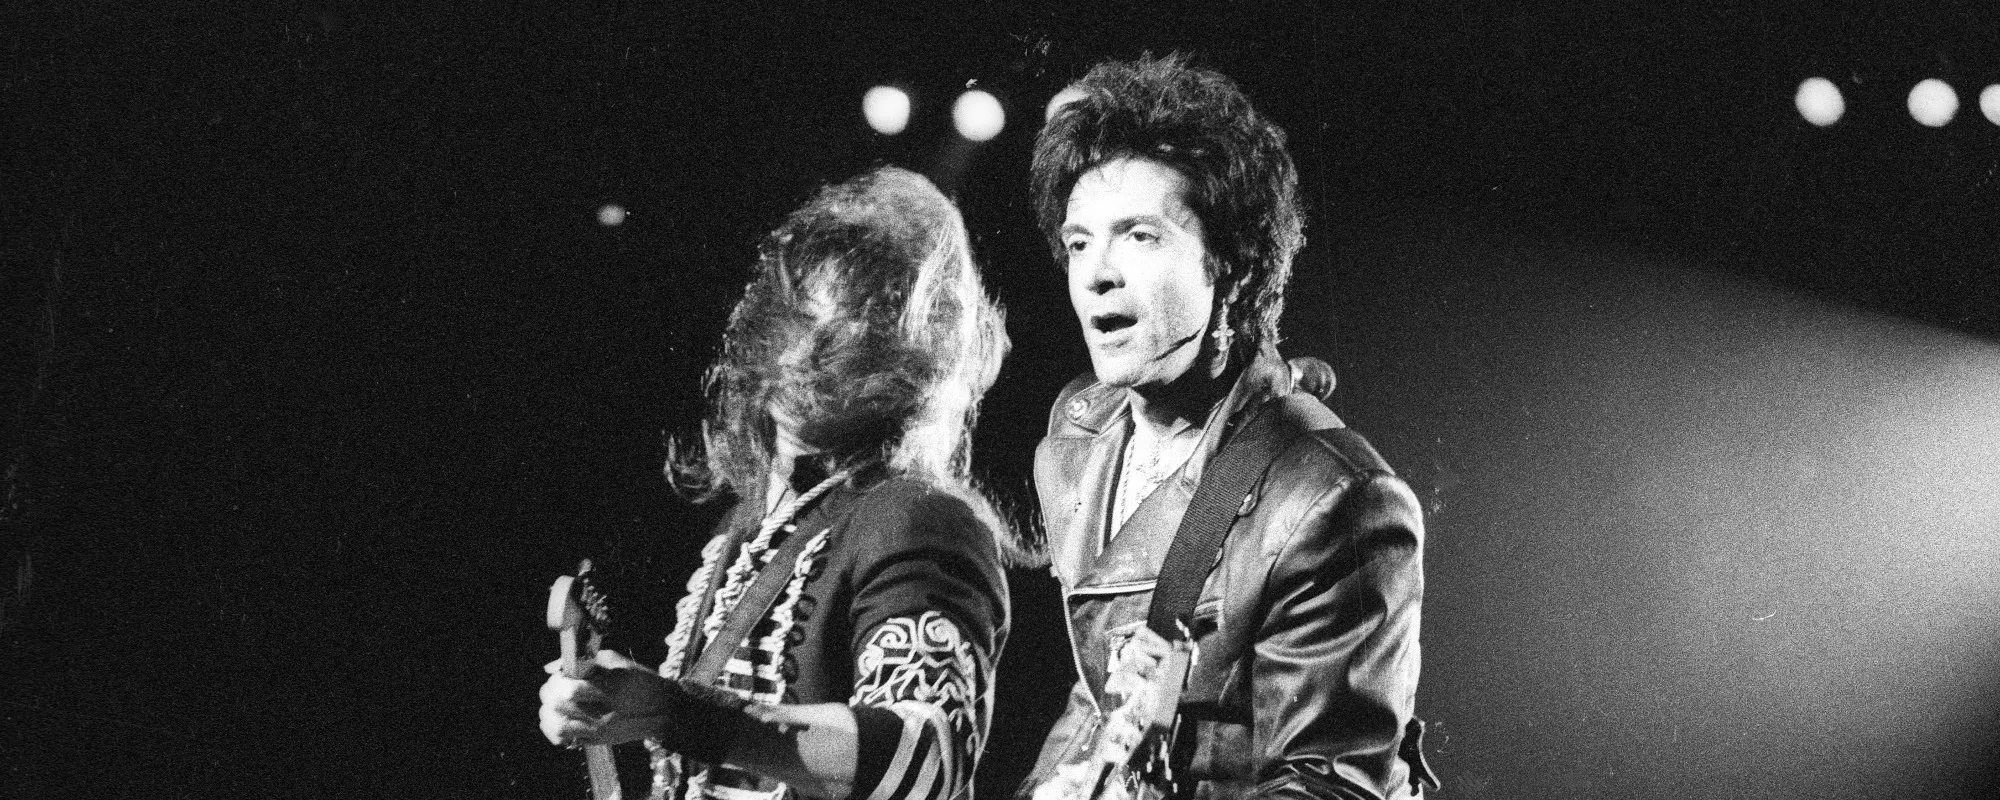 Bon Jovi Founding Member and Bassist Alec John Such Dies at 70